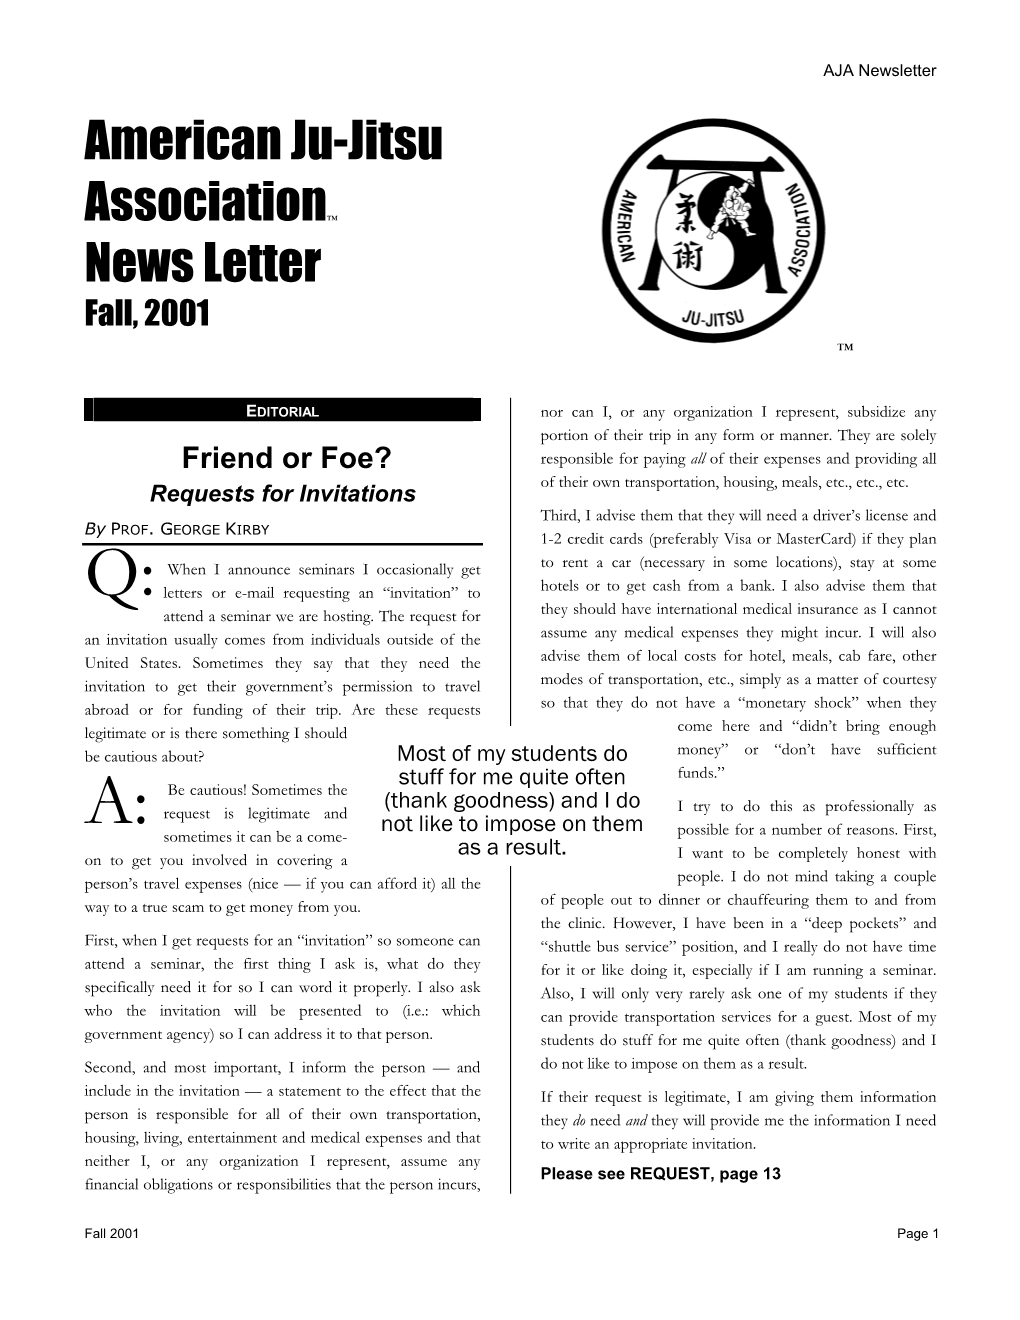 October, 2001 AJA Newsletter